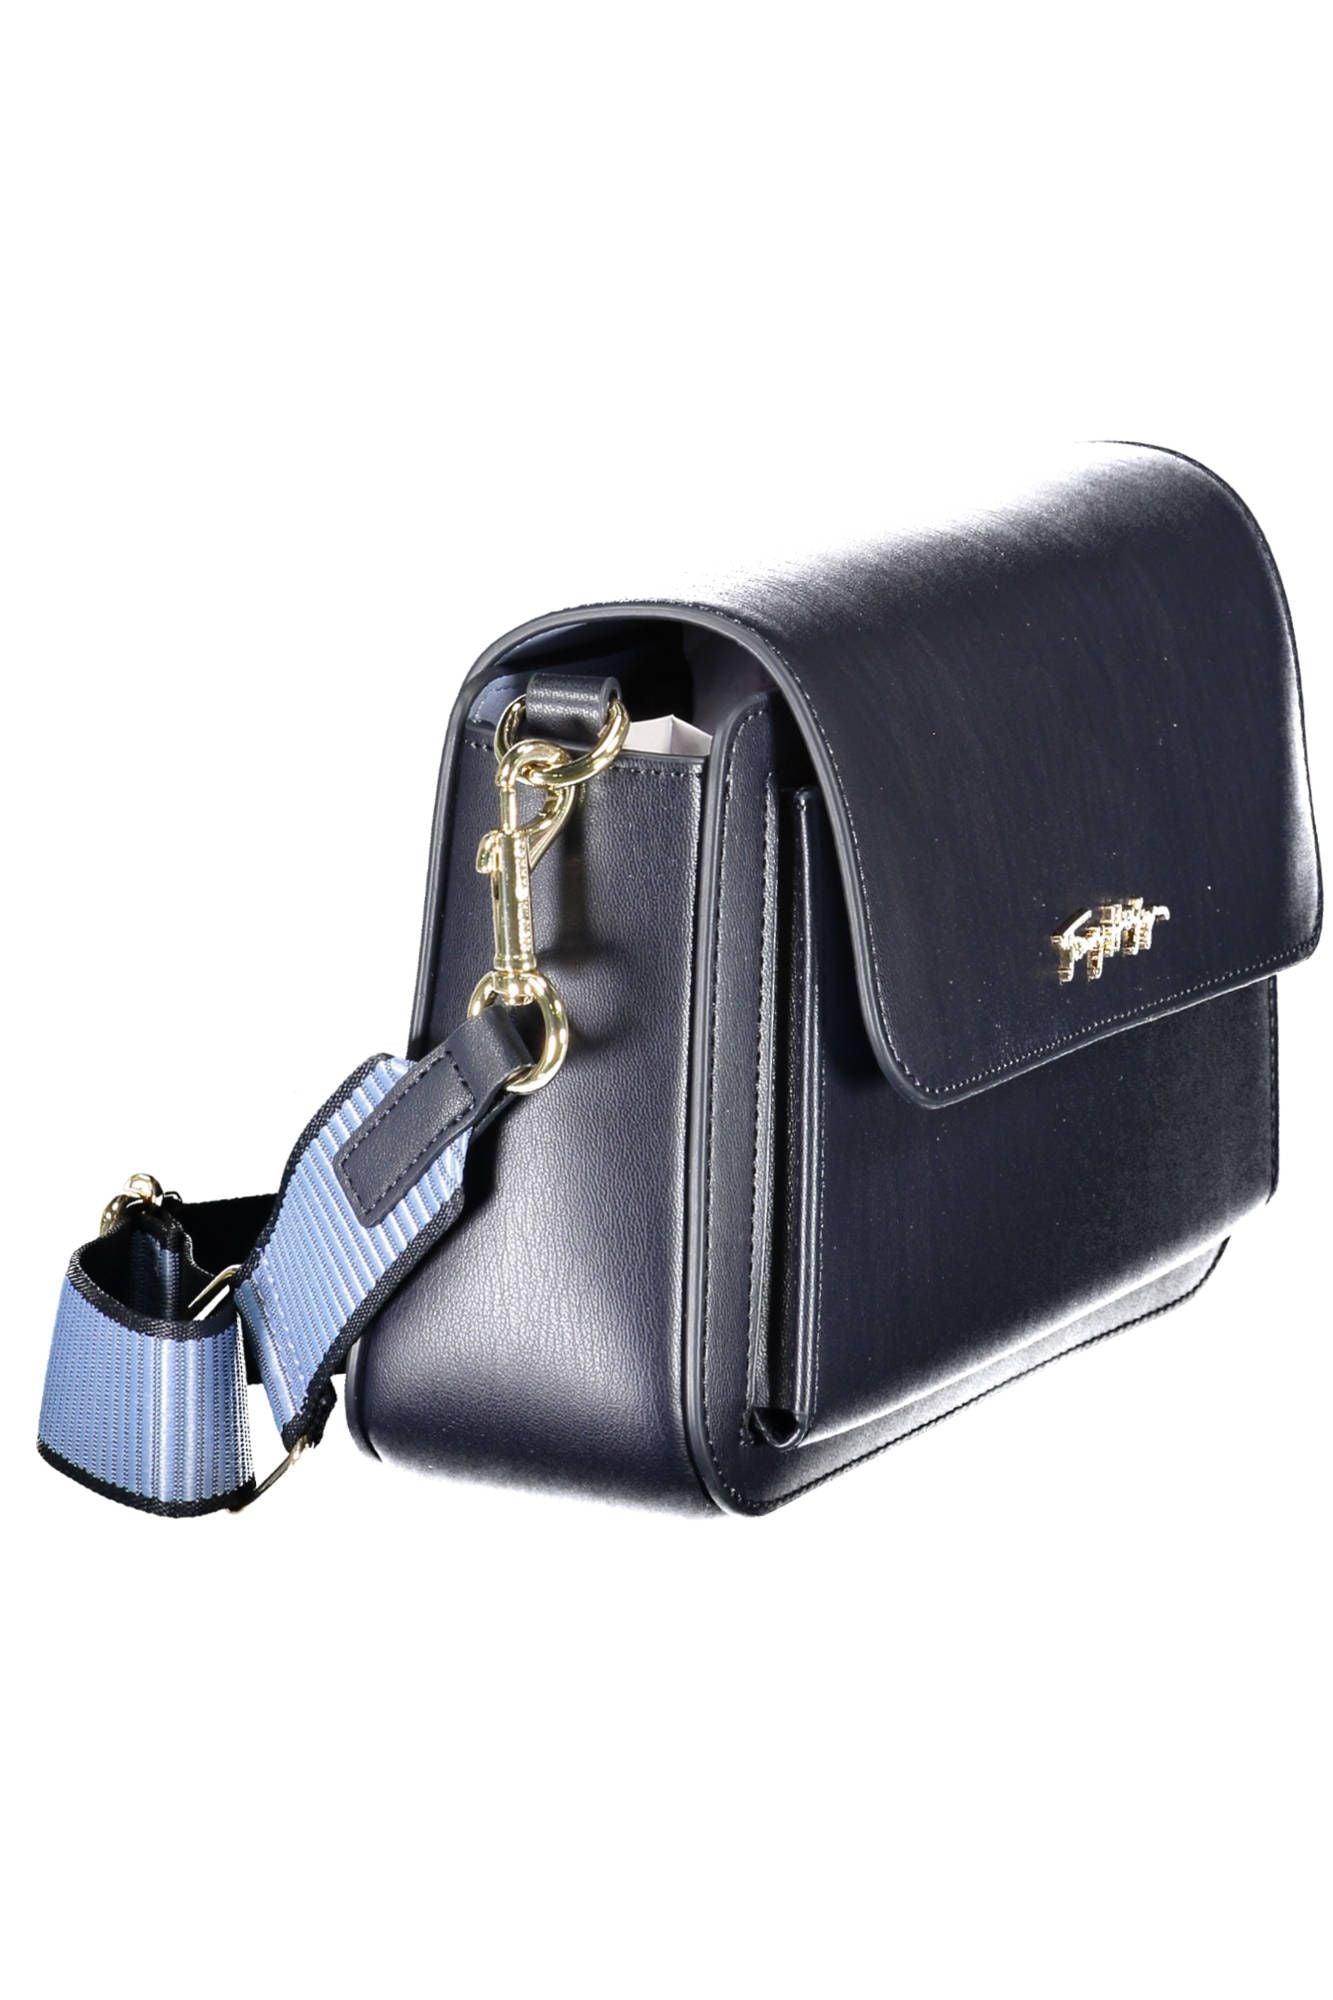 Elegant Blue Shoulder Bag with Contrast Details